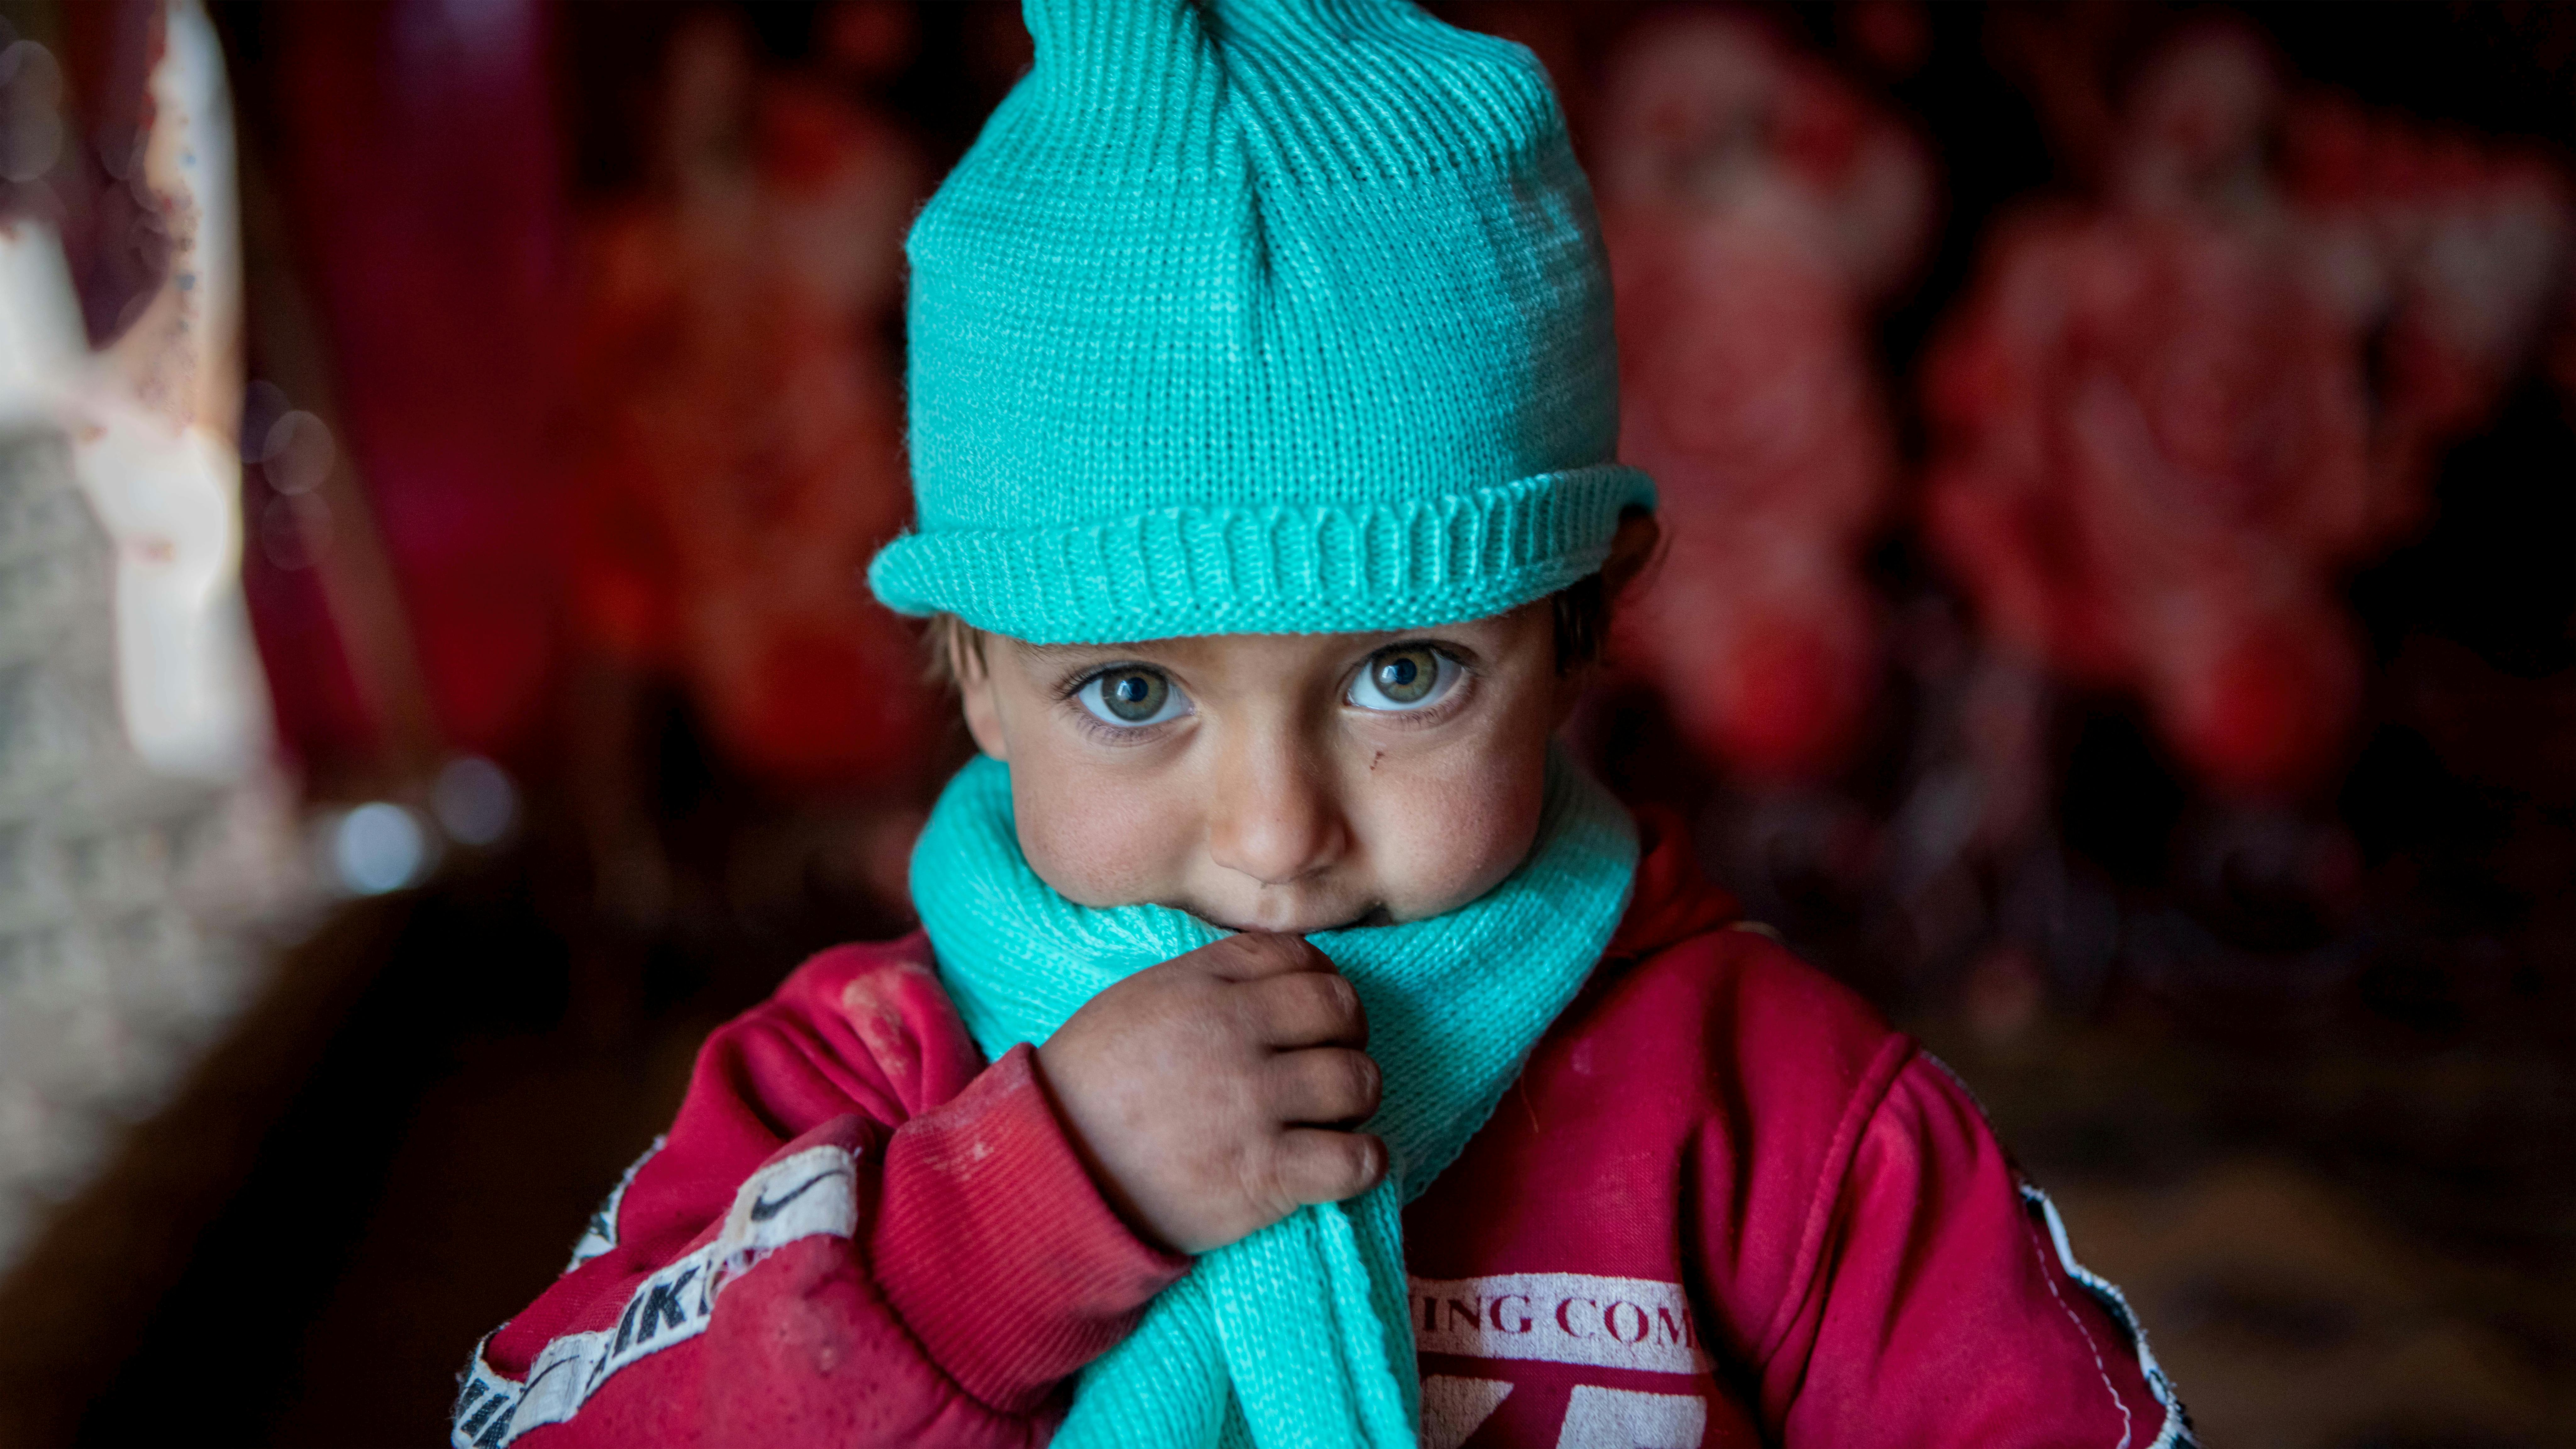 La piccola Kawthar, 3 anni, indossa sciarpa e cappello di lana, consegnati dall’UNICEF insieme al resto del kit di abiti invernali. Siamo in Siria, nel villaggio di Alzhouriyeh, zona rurale orientale di Homs